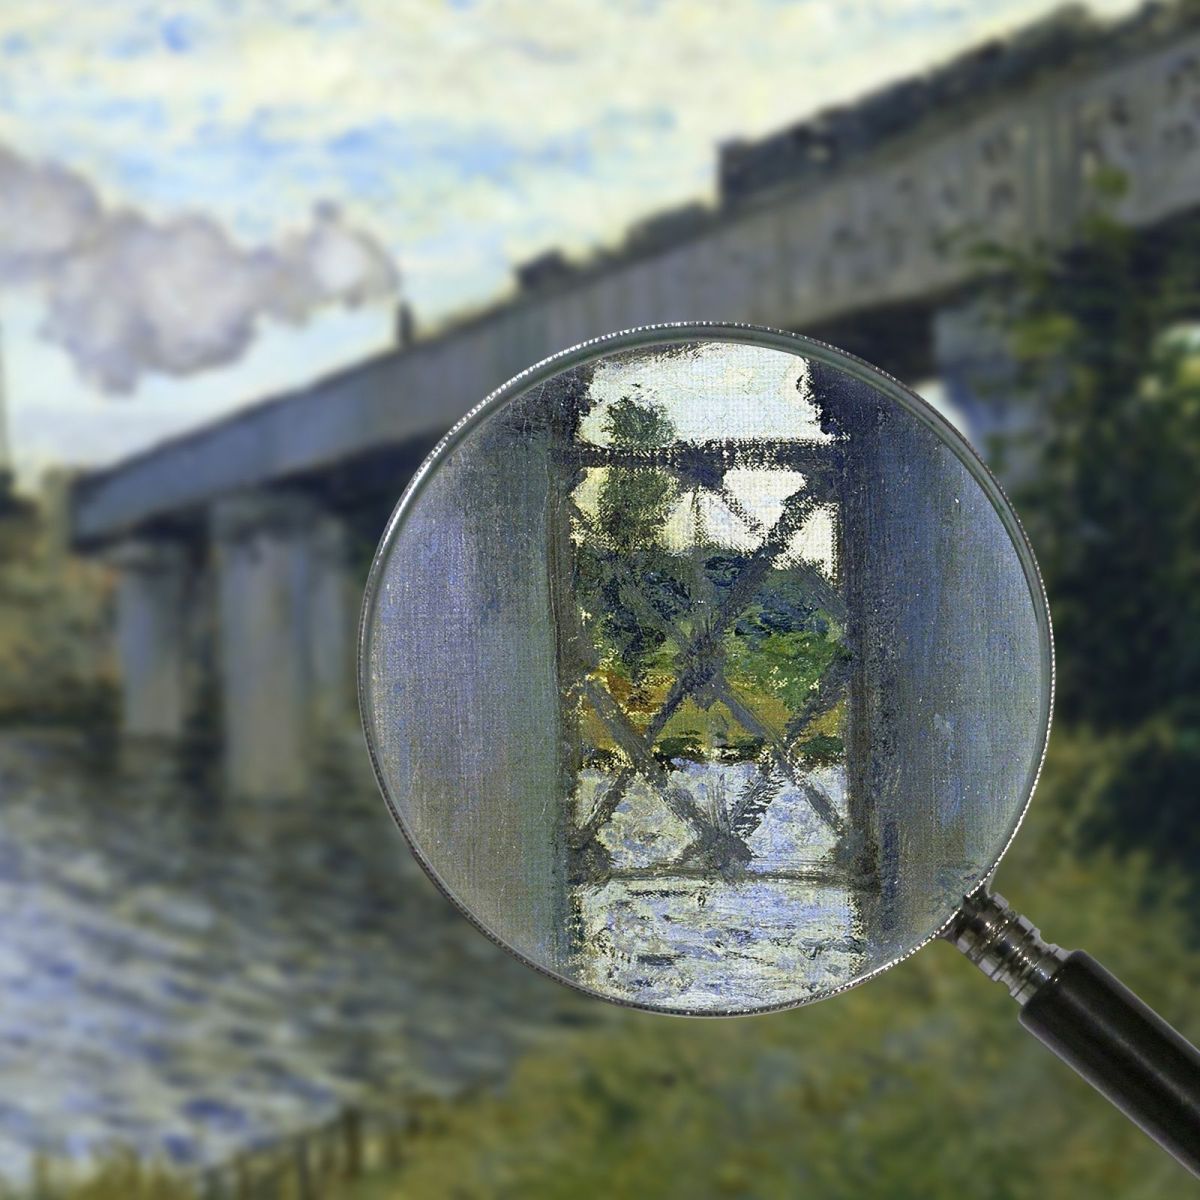 The Railway Bridge At Argenteuil, 1874 Monet Claude canvas print mnt89